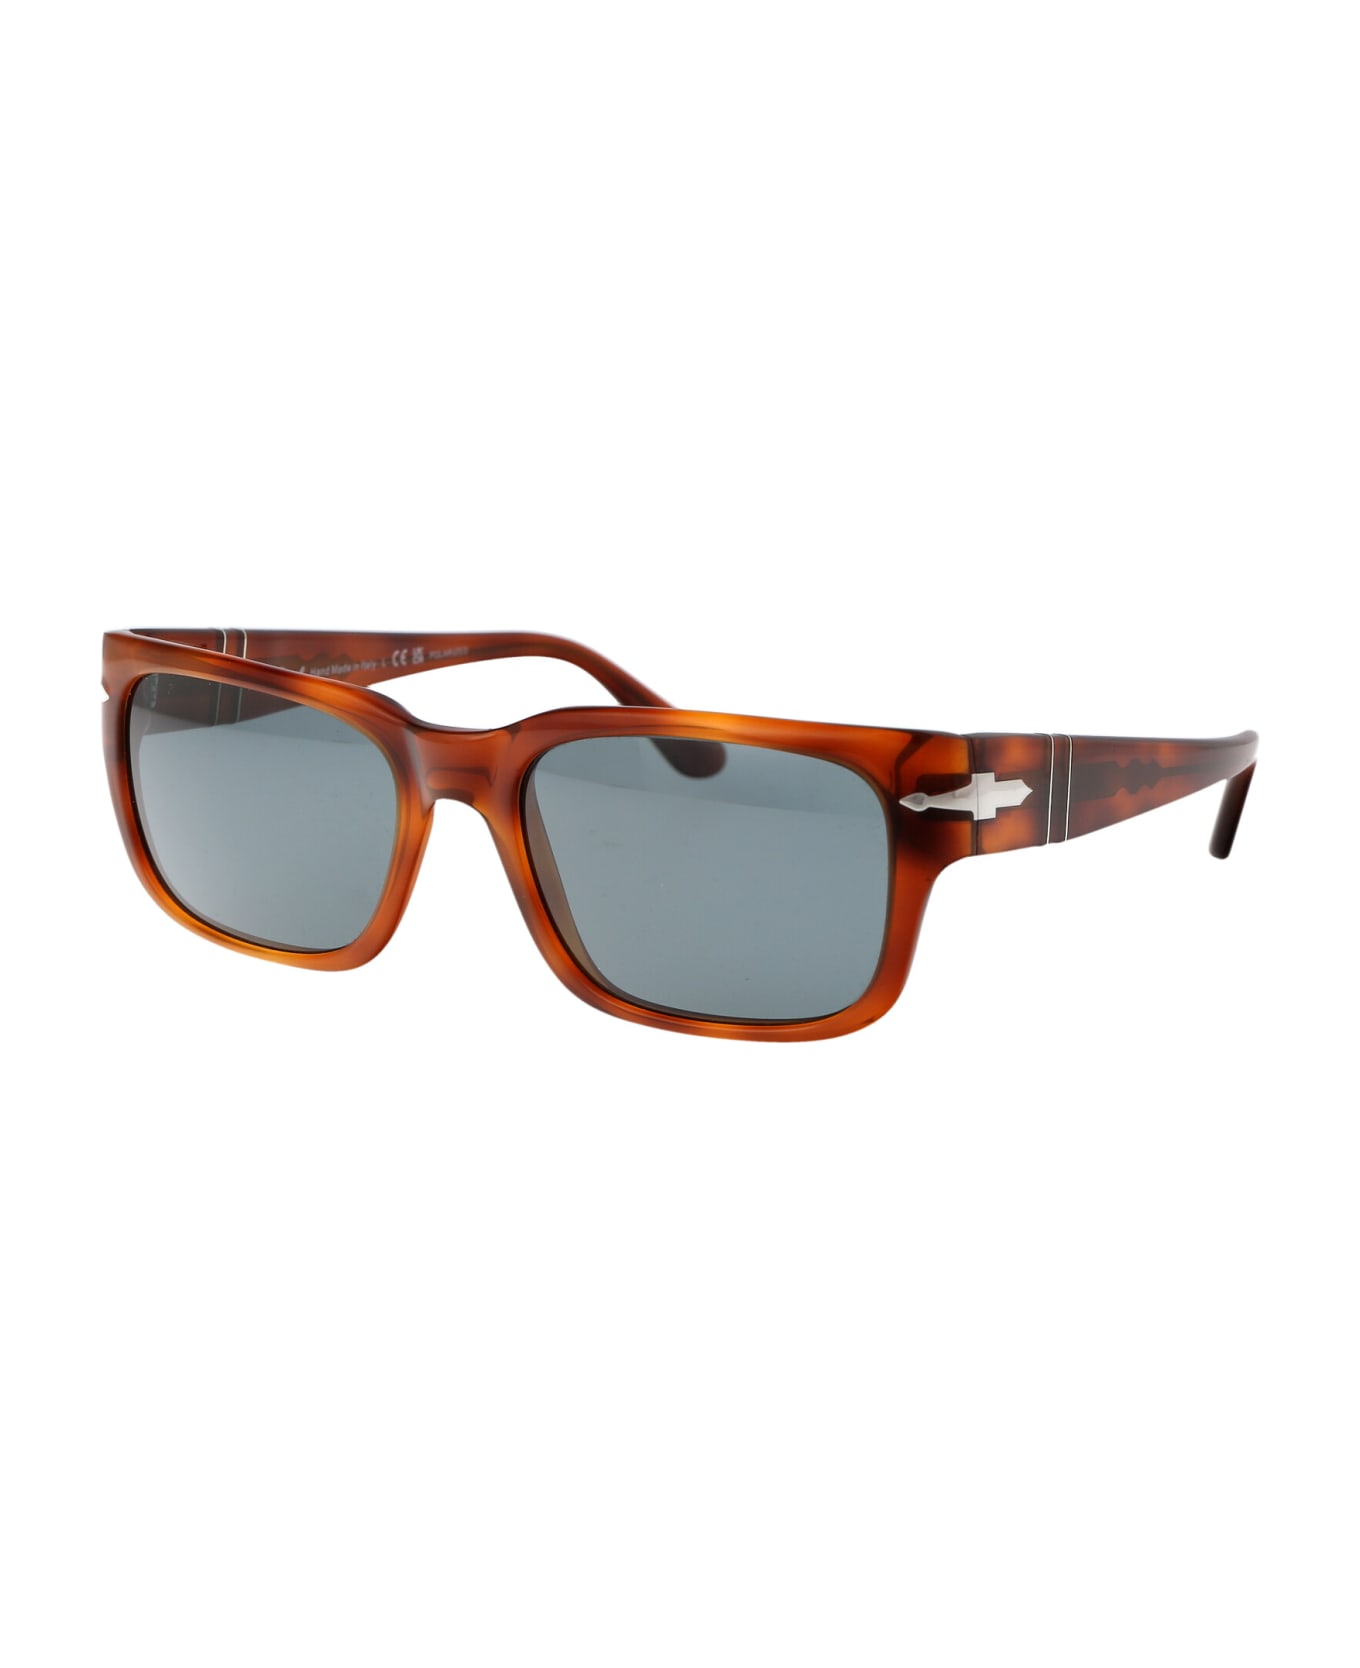 Persol 0po3315s Sunglasses - 96/3R Terra Di Siena